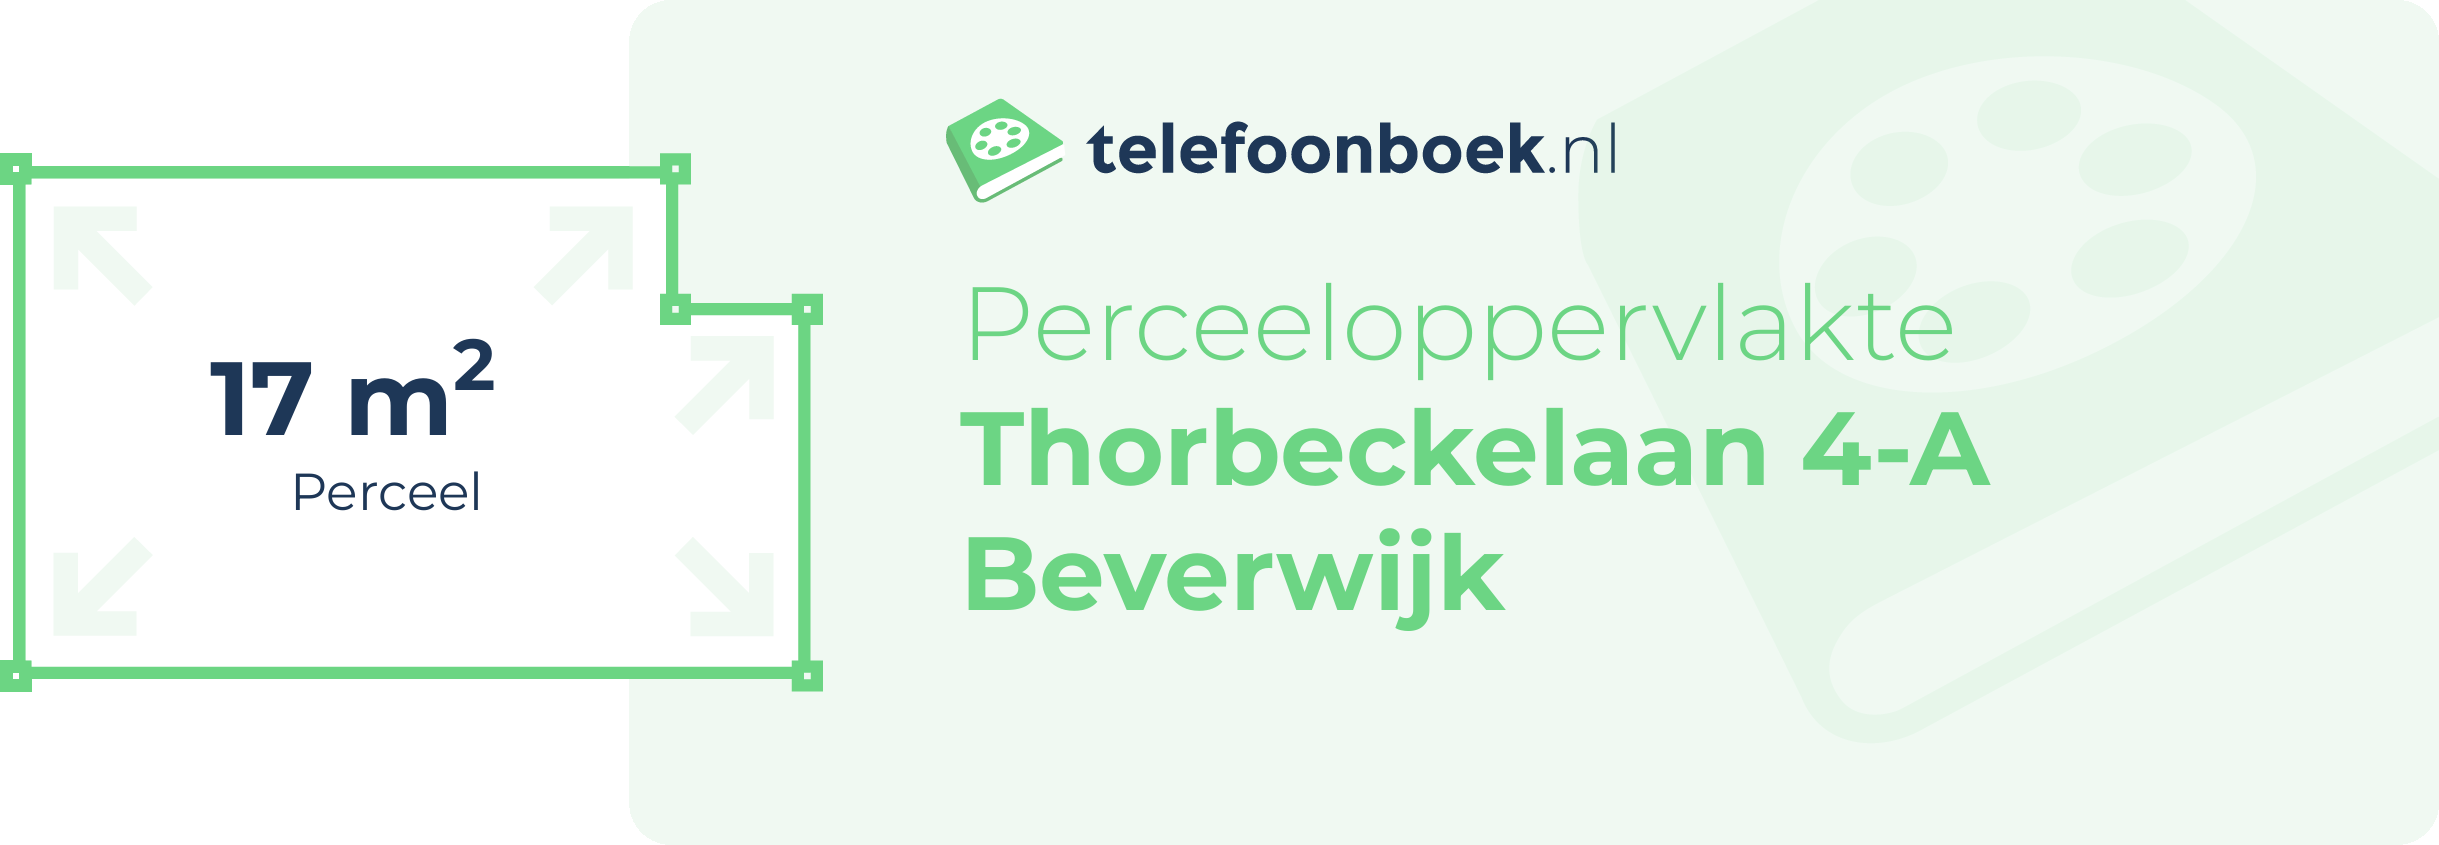 Perceeloppervlakte Thorbeckelaan 4-A Beverwijk